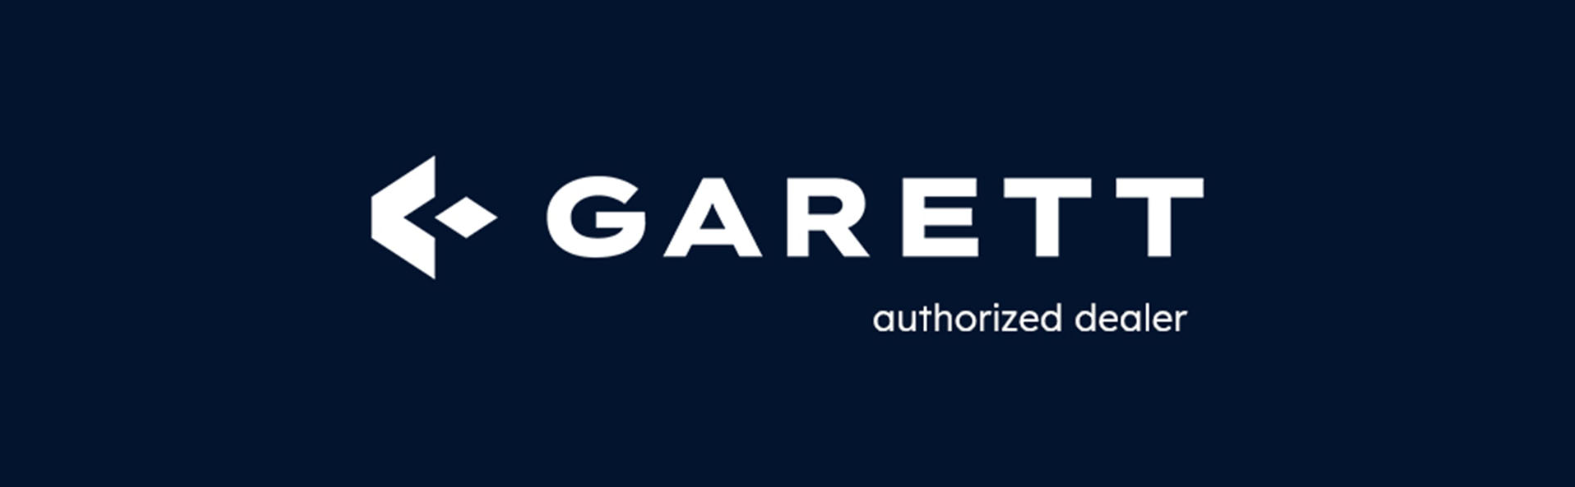 Garett GRC Style Silver/Black Garett